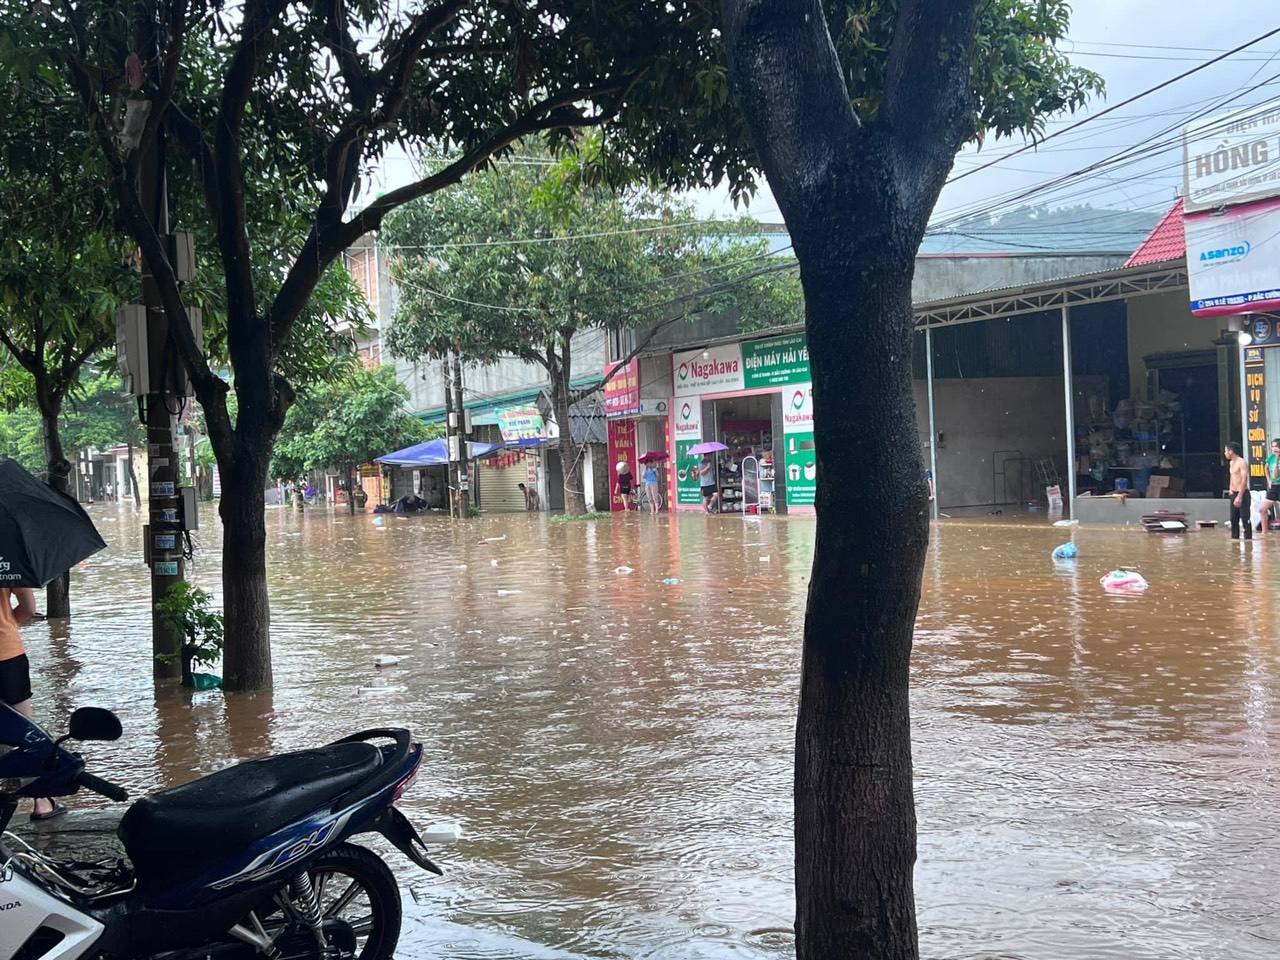 Một số nơi ở thành phố Lào Cai thường xuyên xảy ra tình trạng ngập úng khi mưa lớn. Theo người dân, cho đến nay tình trạng ngập úng do nước tiêu thoát chậm chưa được giải quyết triệt để.